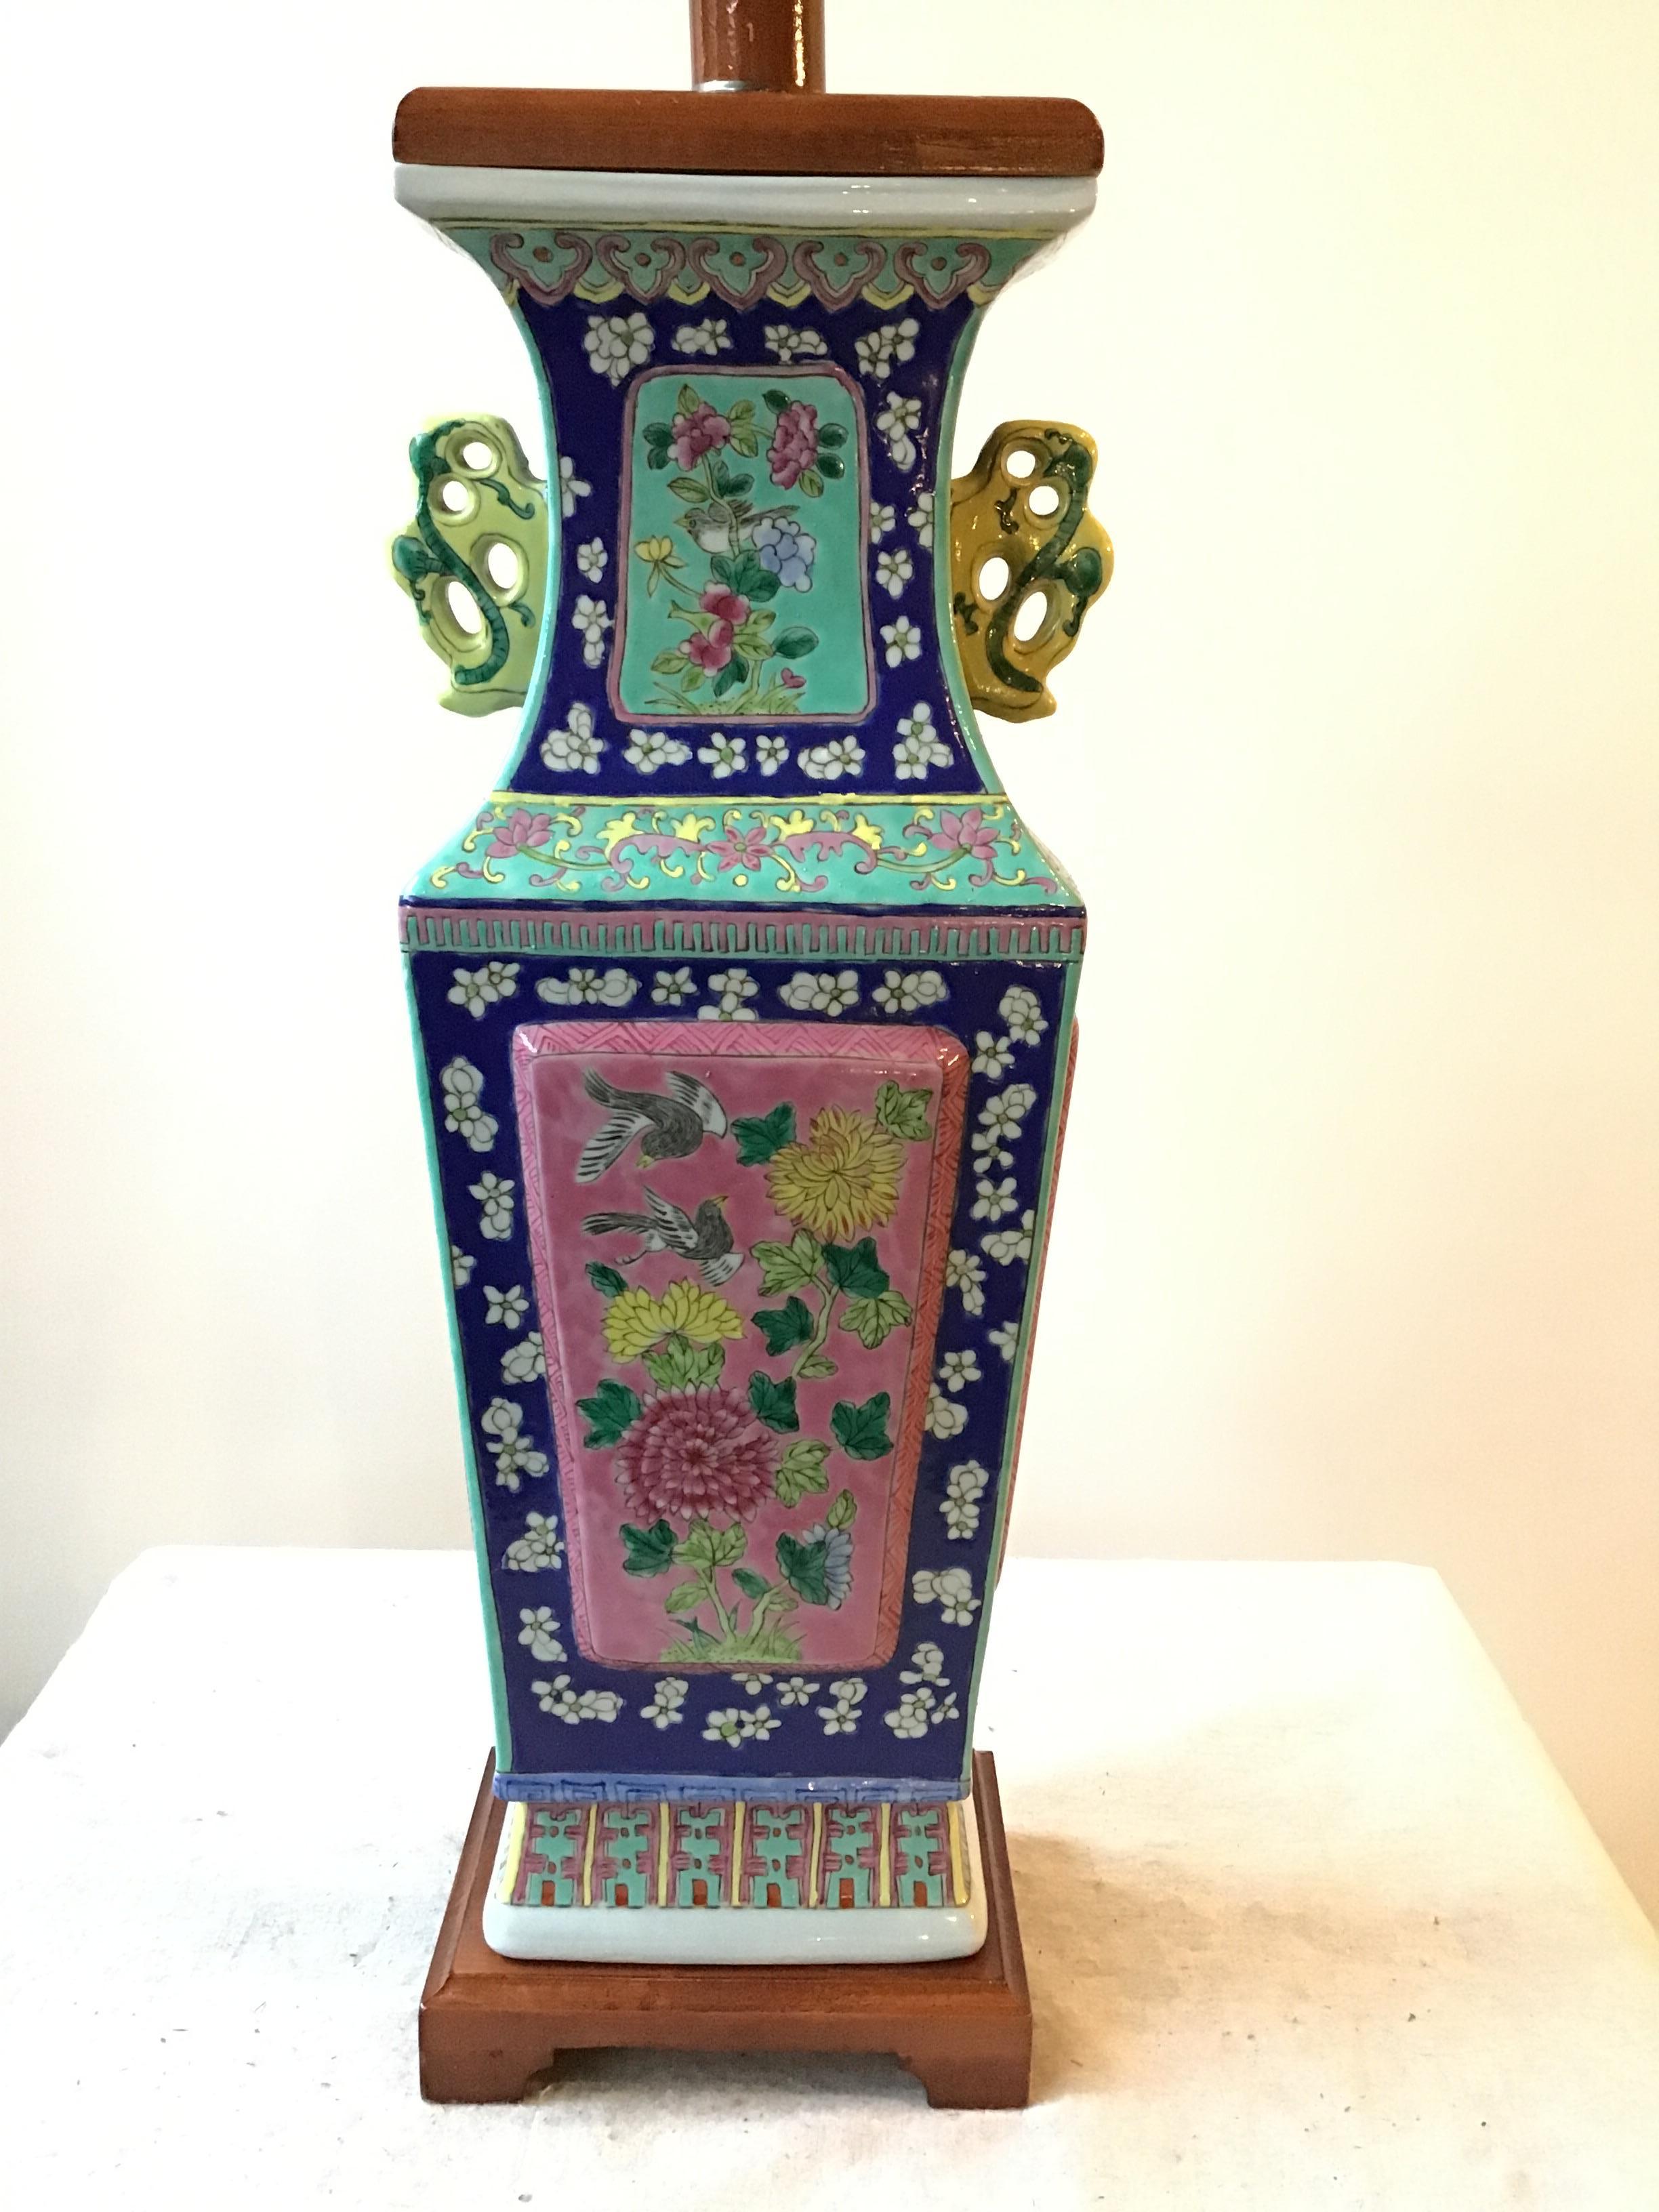 Lampe de table asiatique en céramique colorée peinte à la main dans les années 1960.